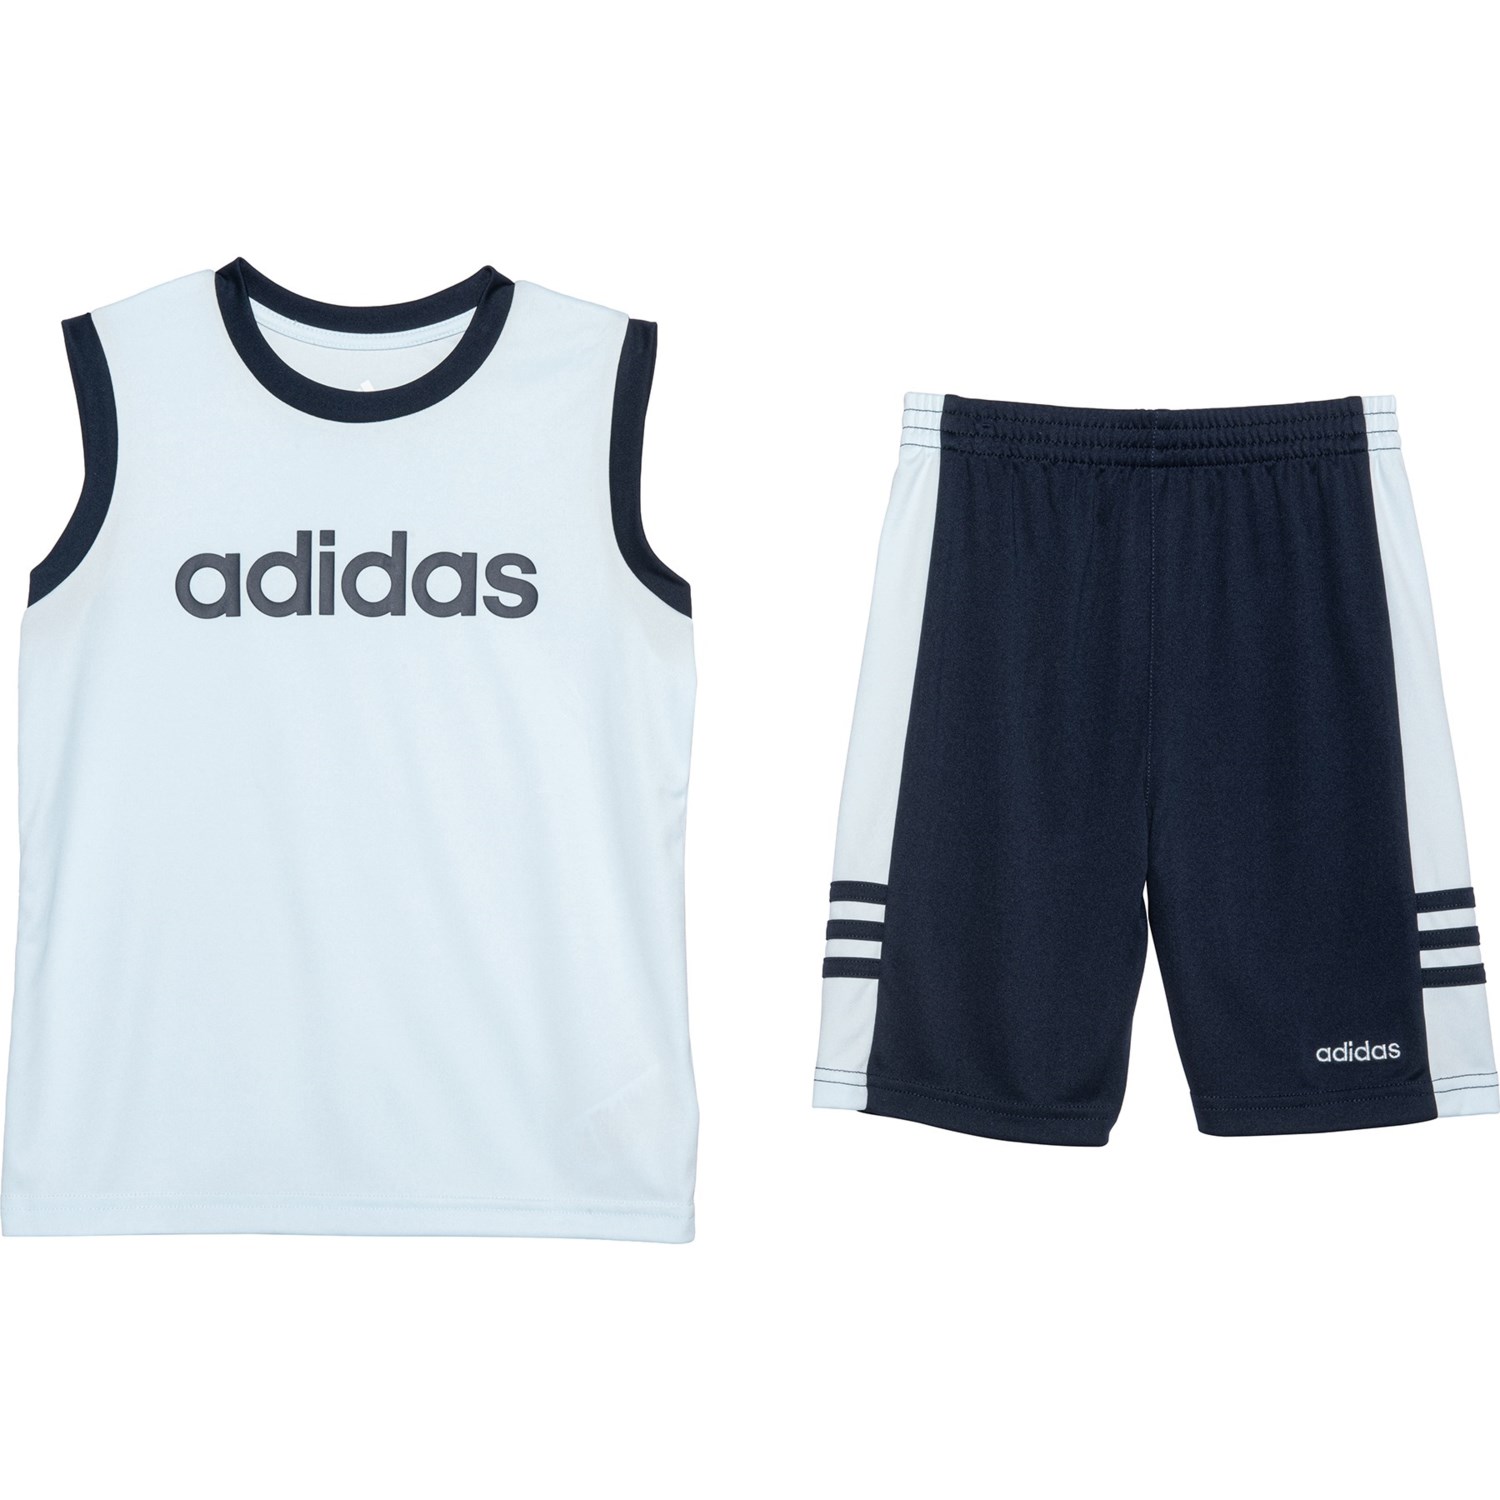 adidas top and shorts set